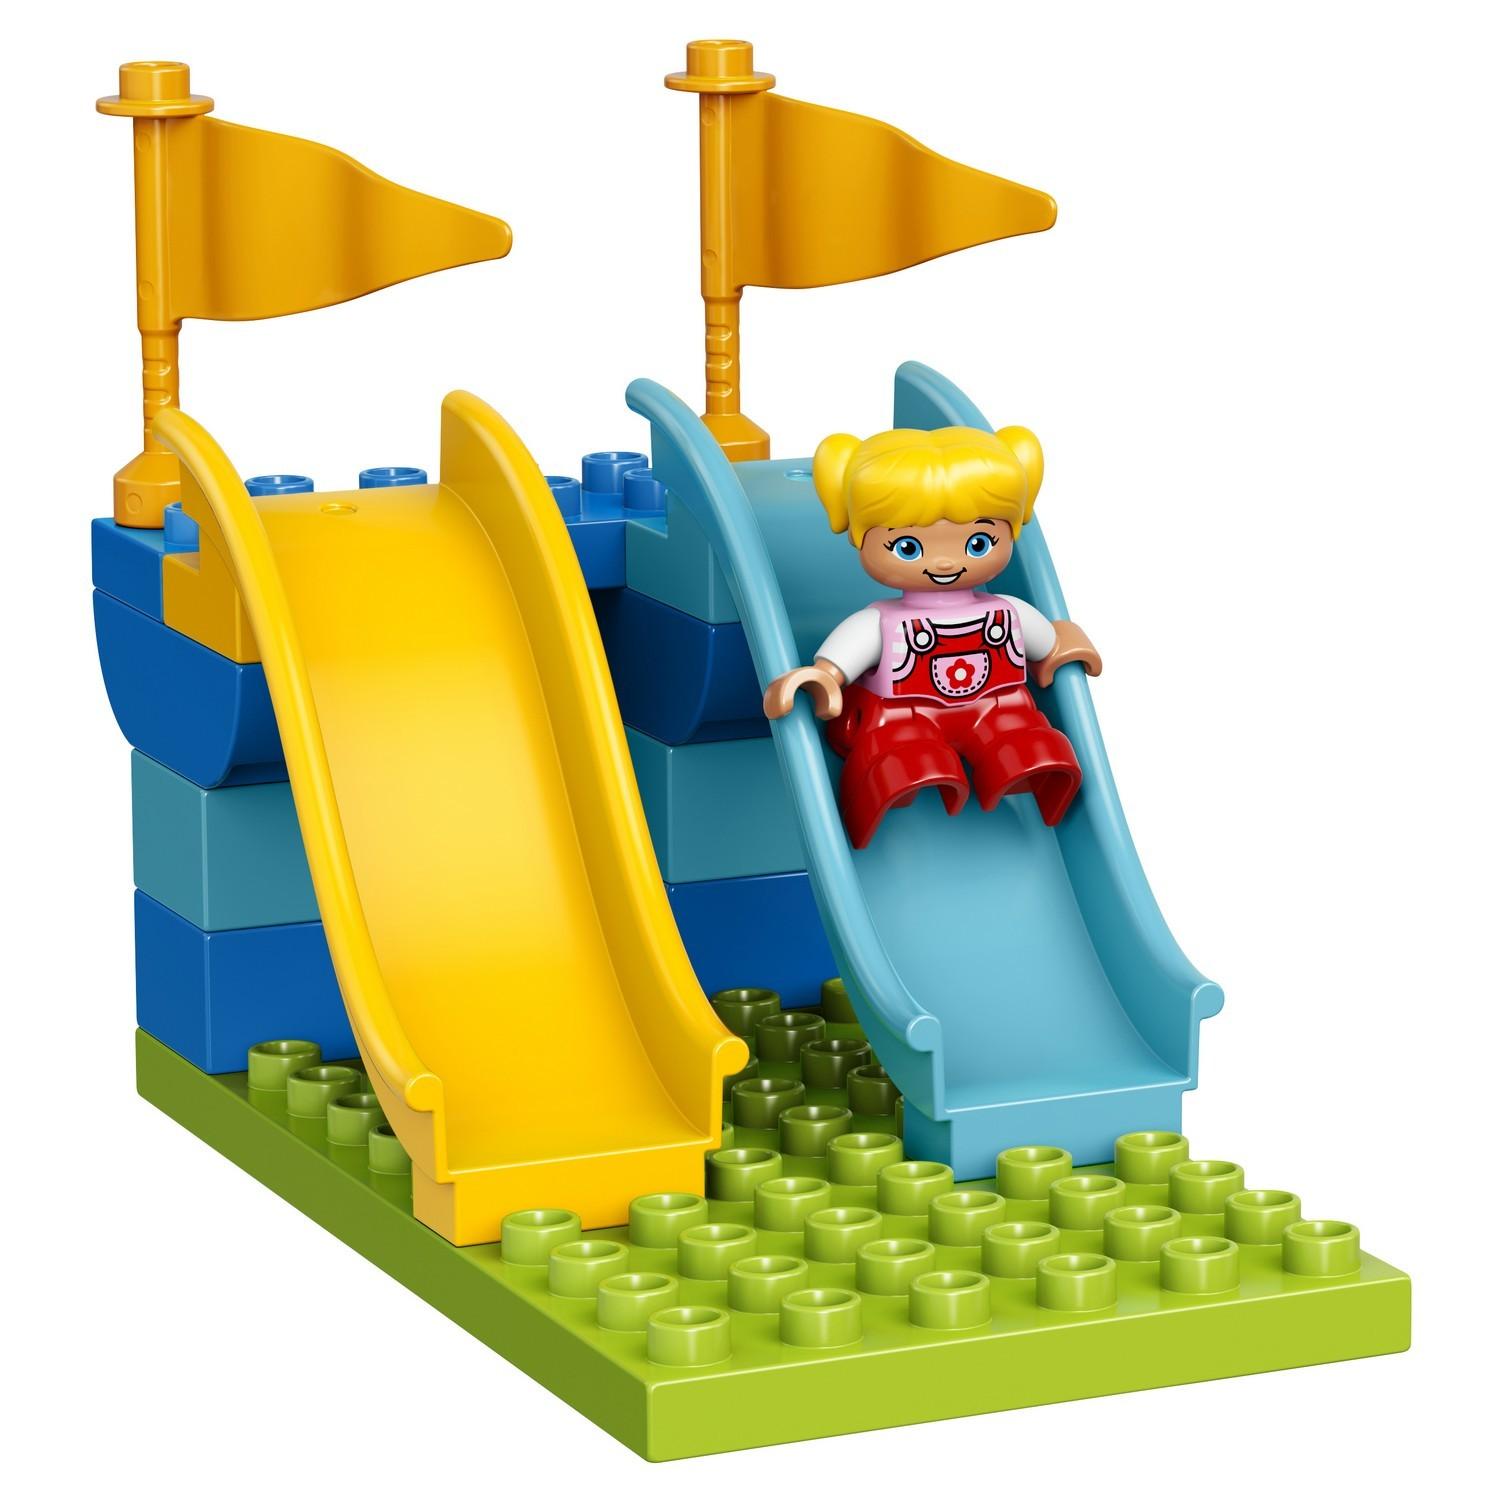 Lego Duplo 10841 Семейный парк аттракционов